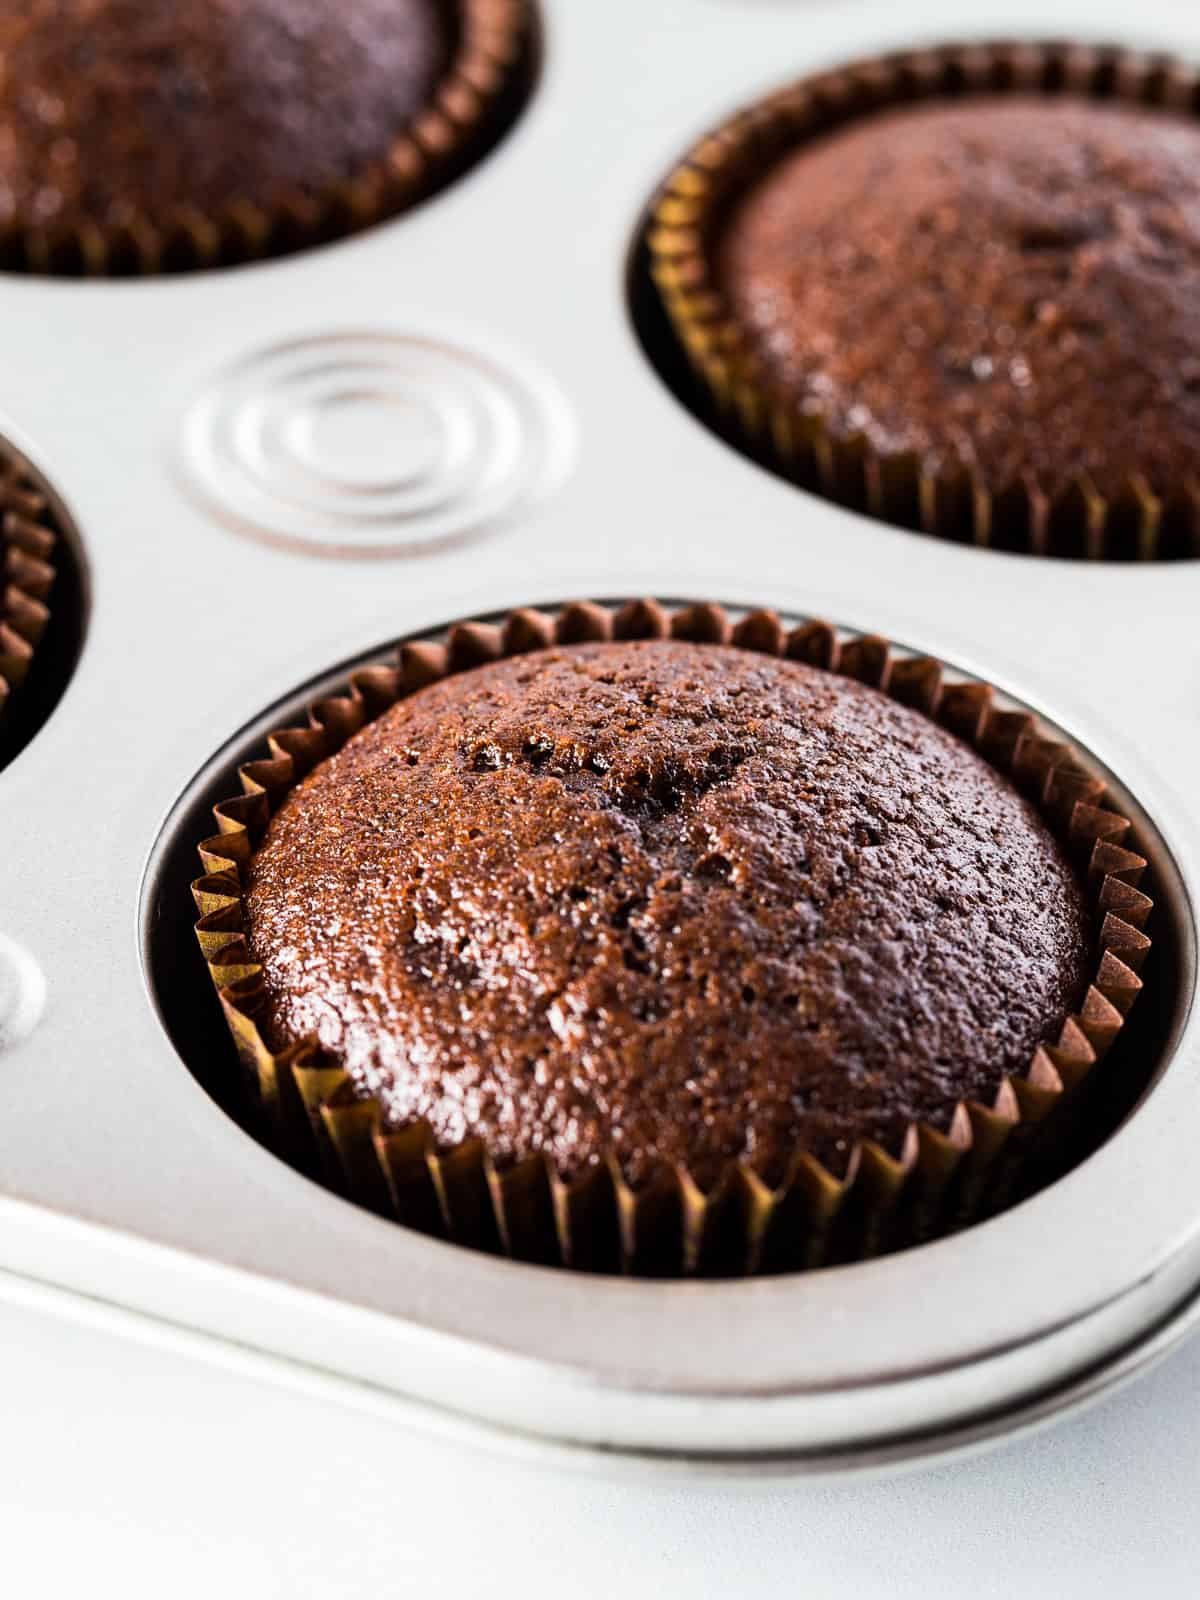 Baked gluten-free chocolate cupcake in cupcake pan.